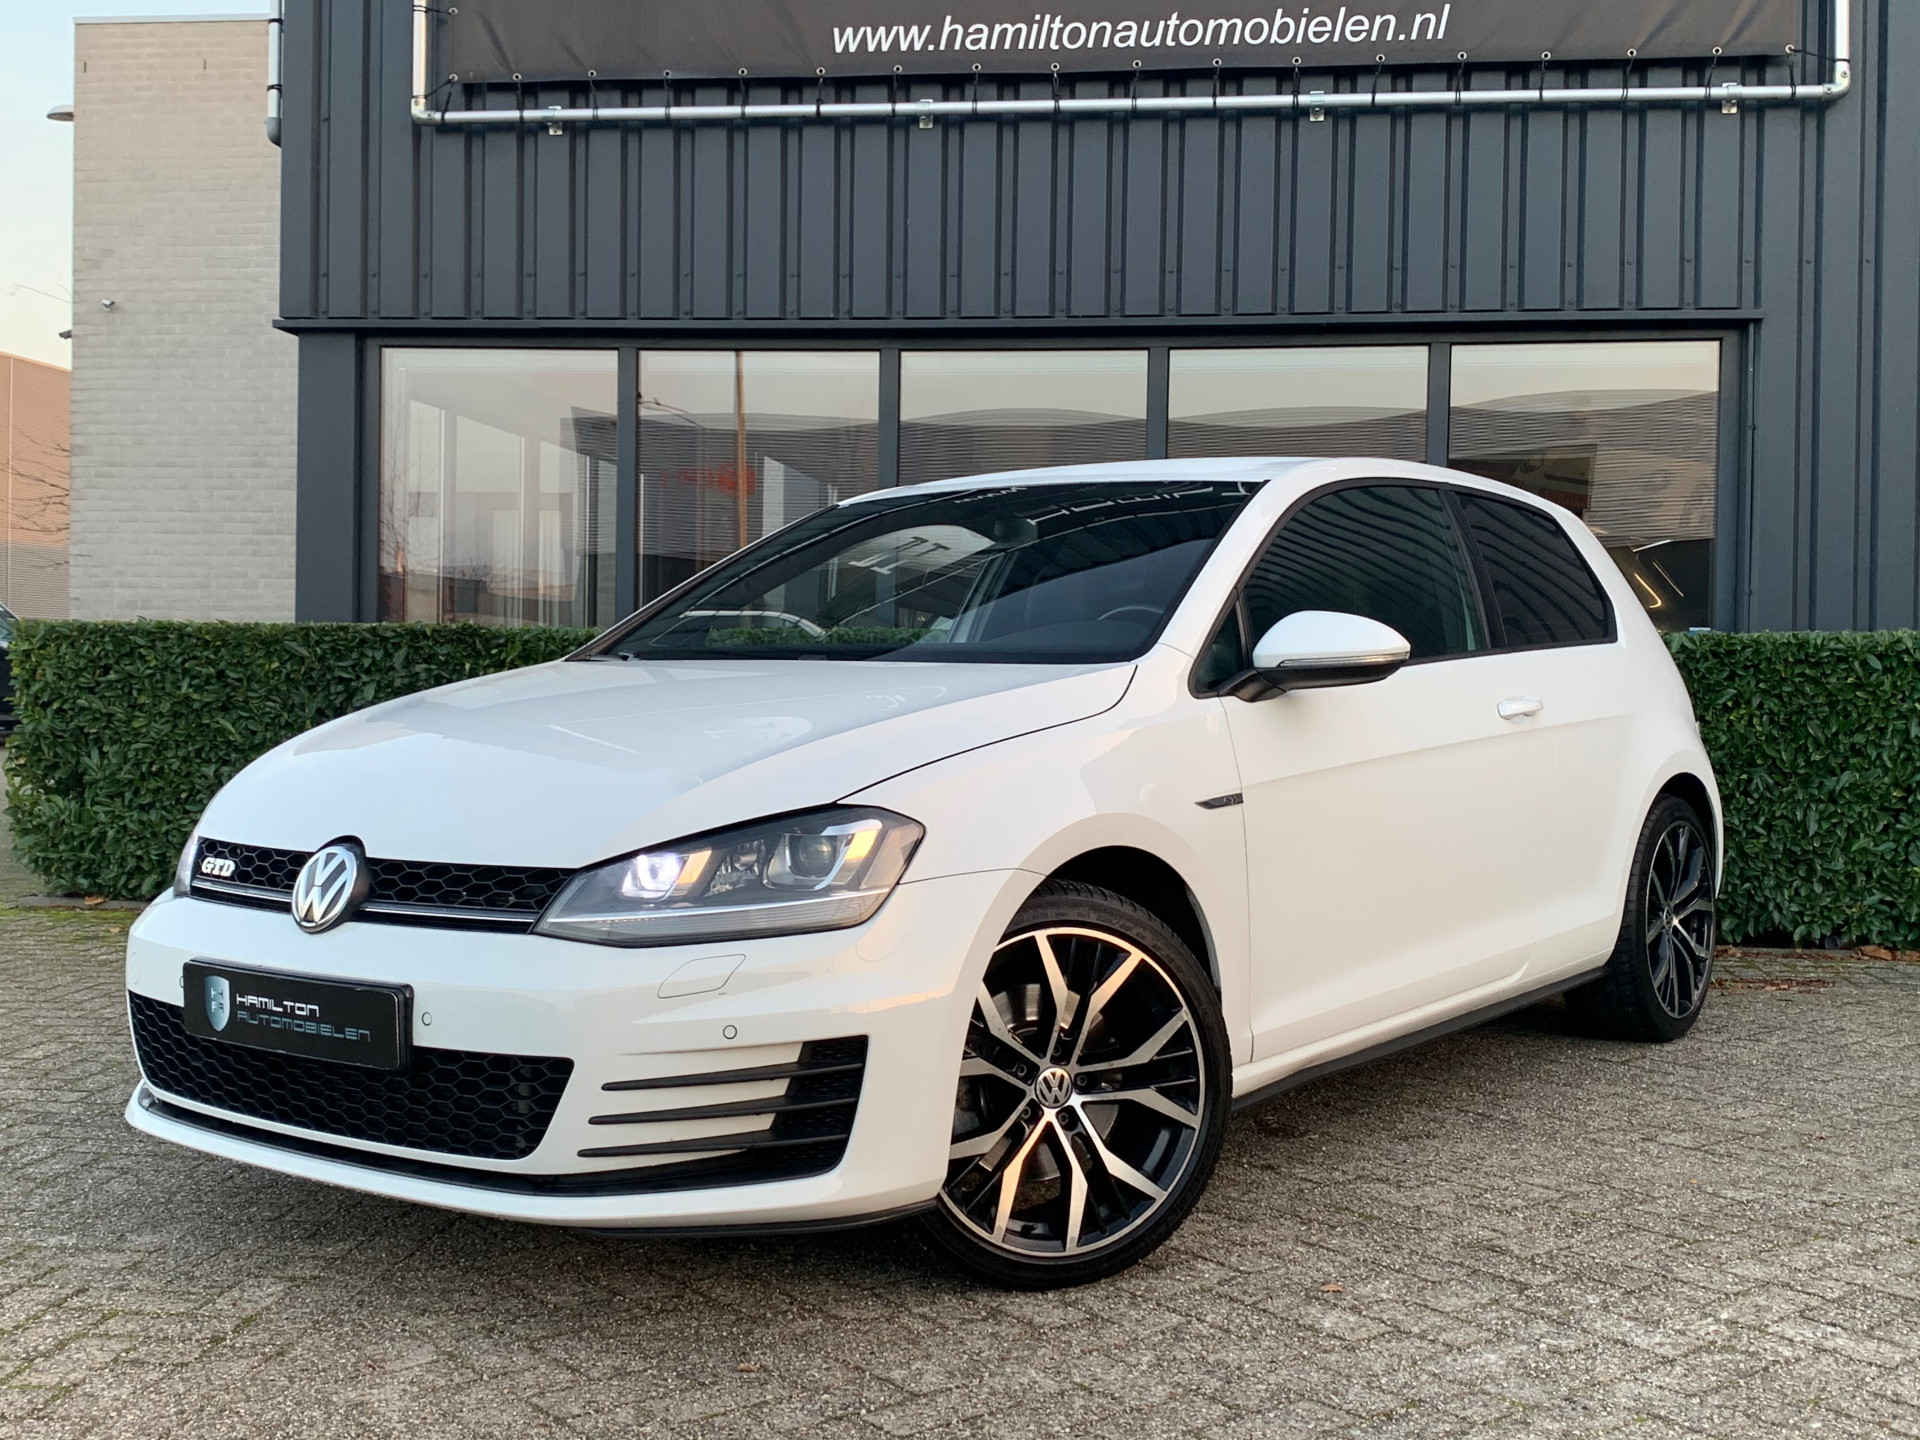 Mok attribuut interview Volkswagen-Golf-7 GTD 2.0 TDI 184pk DSG / Aut.-kopen in Eindhoven